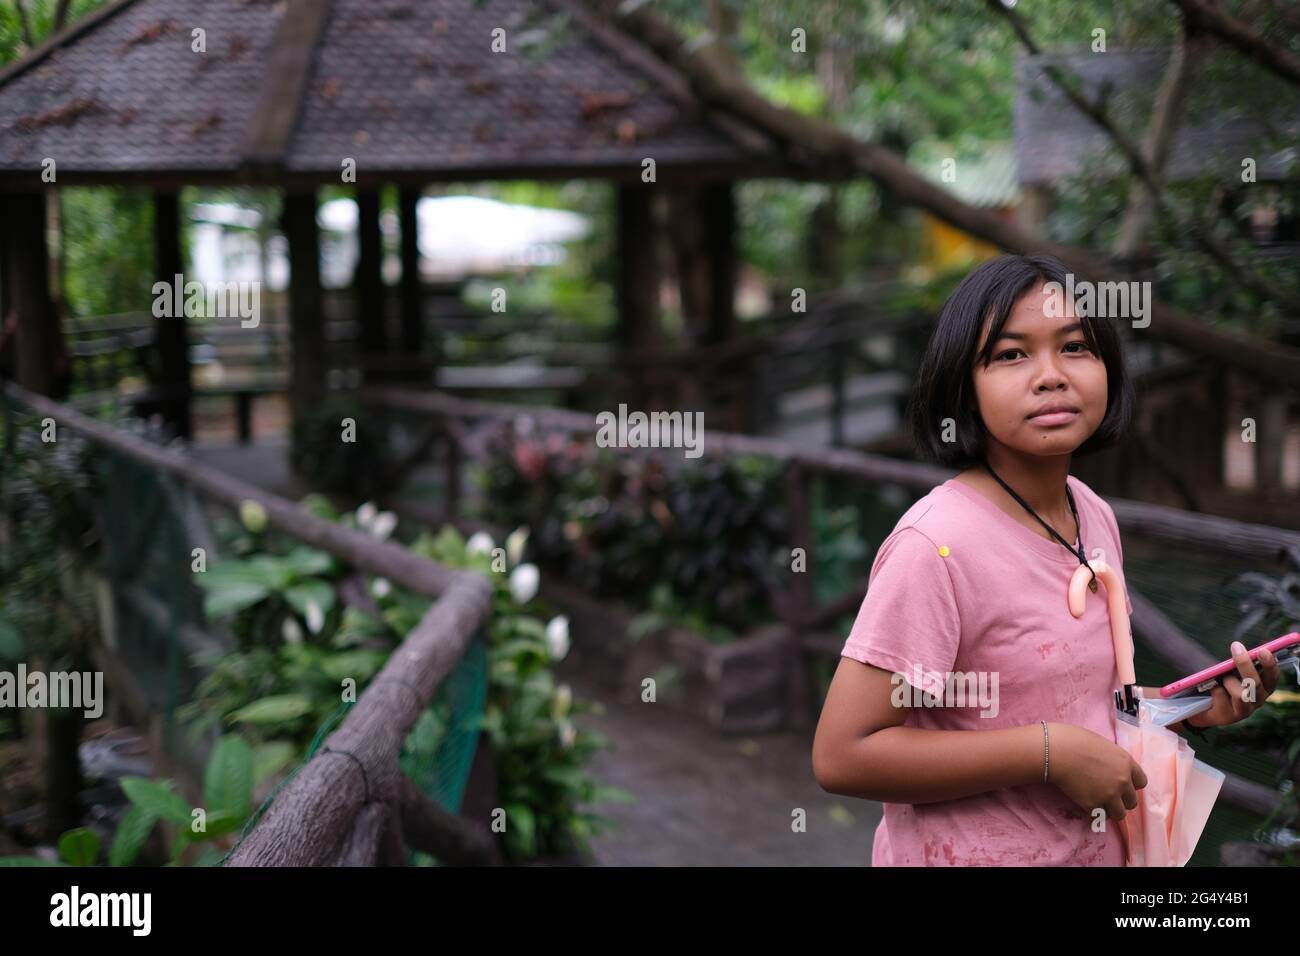 Una ragazza thailandese teen che guarda la macchina fotografica mentre cammina attraverso il giardino con case estive e sentiero in legno dopo la pioggia Foto Stock